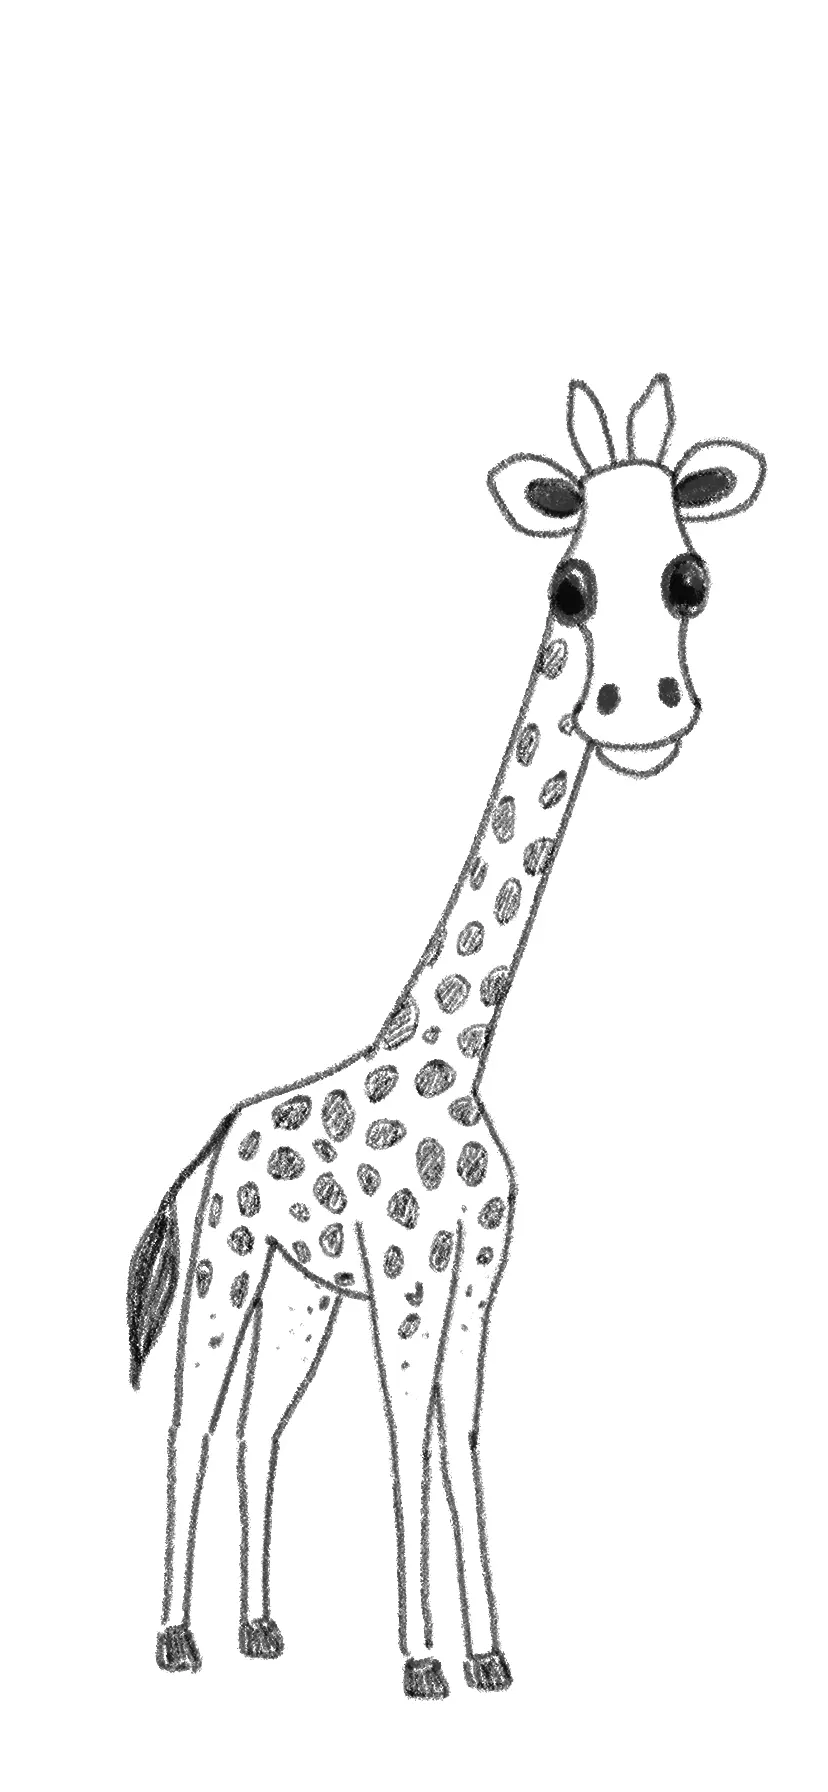 Giraffe Drawing by QZJavs on DeviantArt